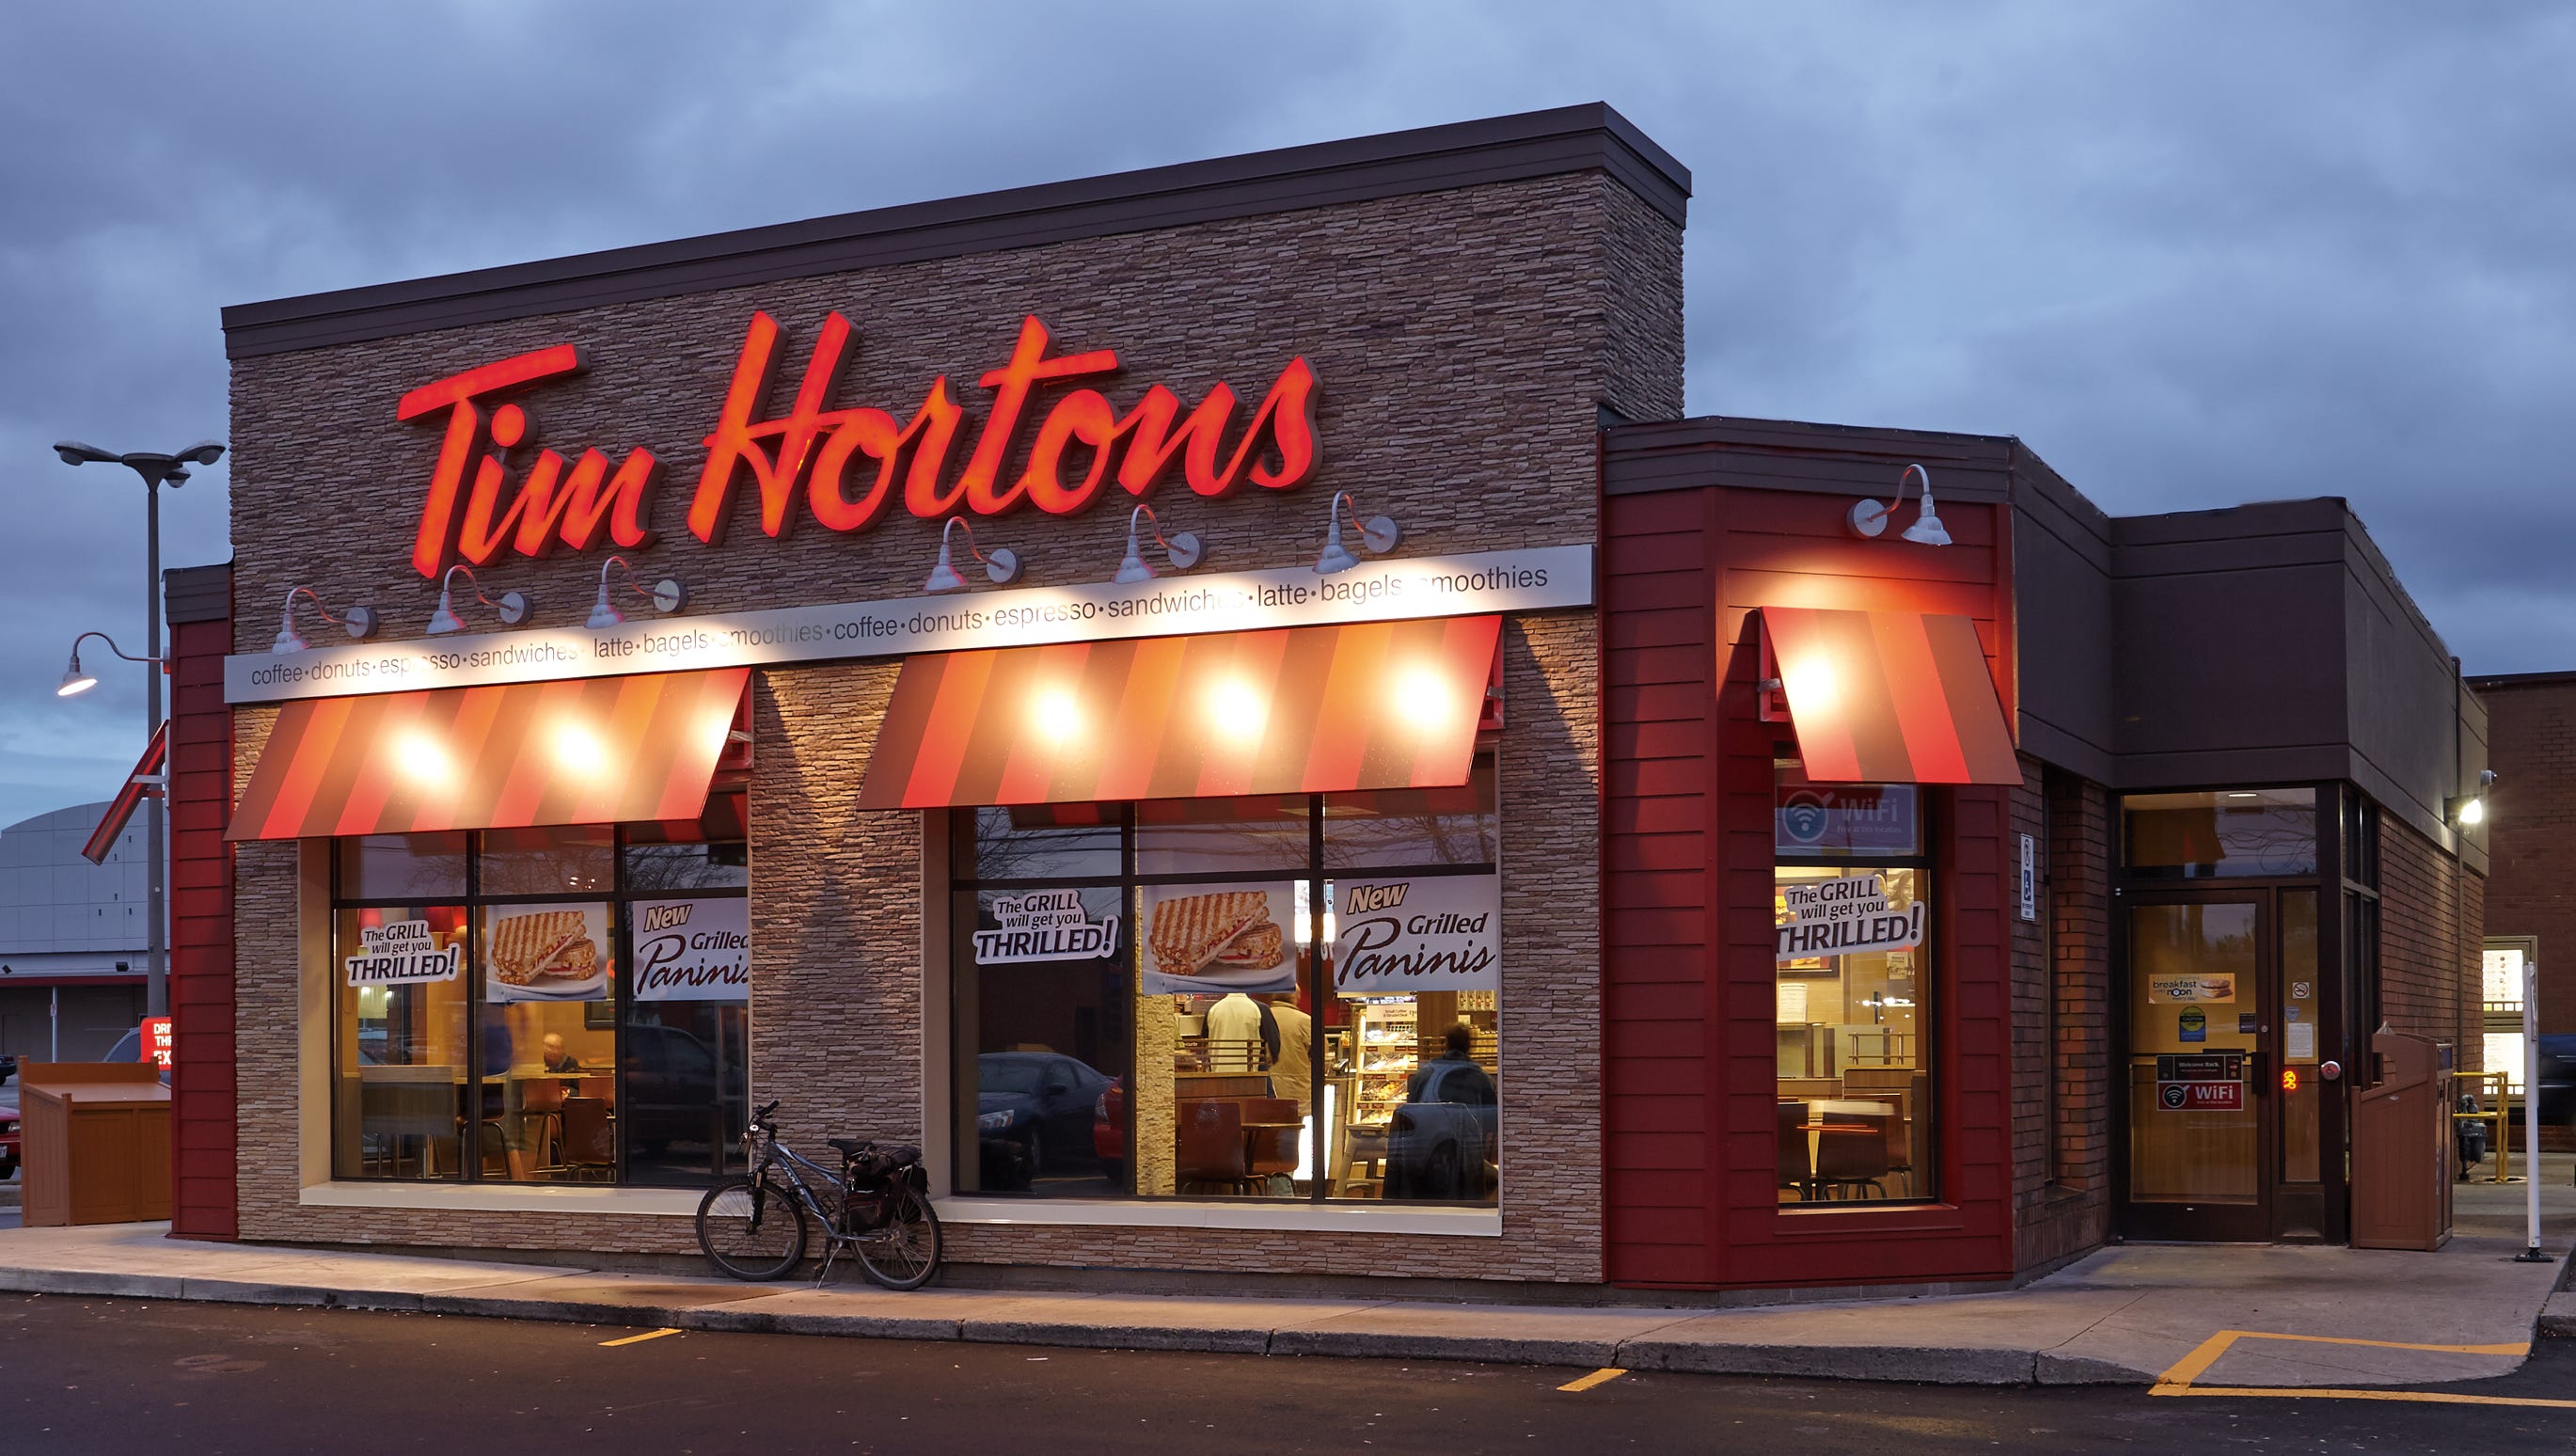 Dù có những vụ kiện và tin đồn về đóng cửa, Tim Hortons vẫn luôn là một trong những thương hiệu cà phê lớn nhất ở Canada. Khám phá tại sao Tim Hortons đã giữ được tín nhiệm của người tiêu dùng và tại sao họ vẫn là một số ít trong nghành cà phê.